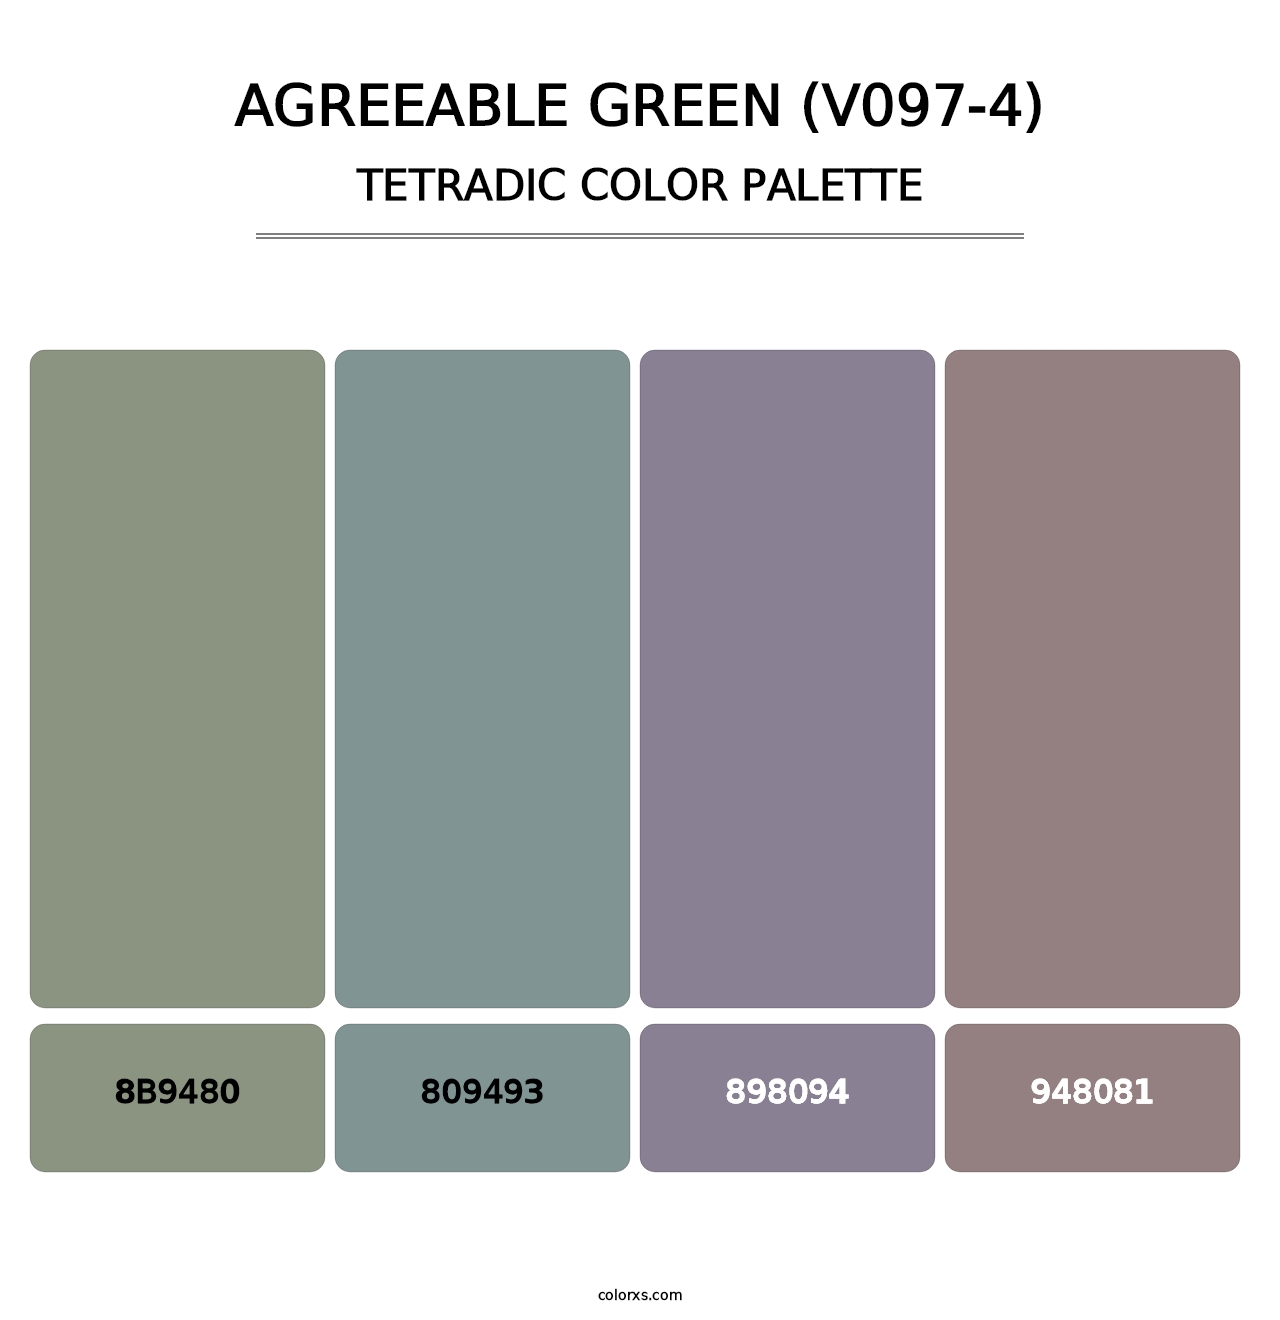 Agreeable Green (V097-4) - Tetradic Color Palette